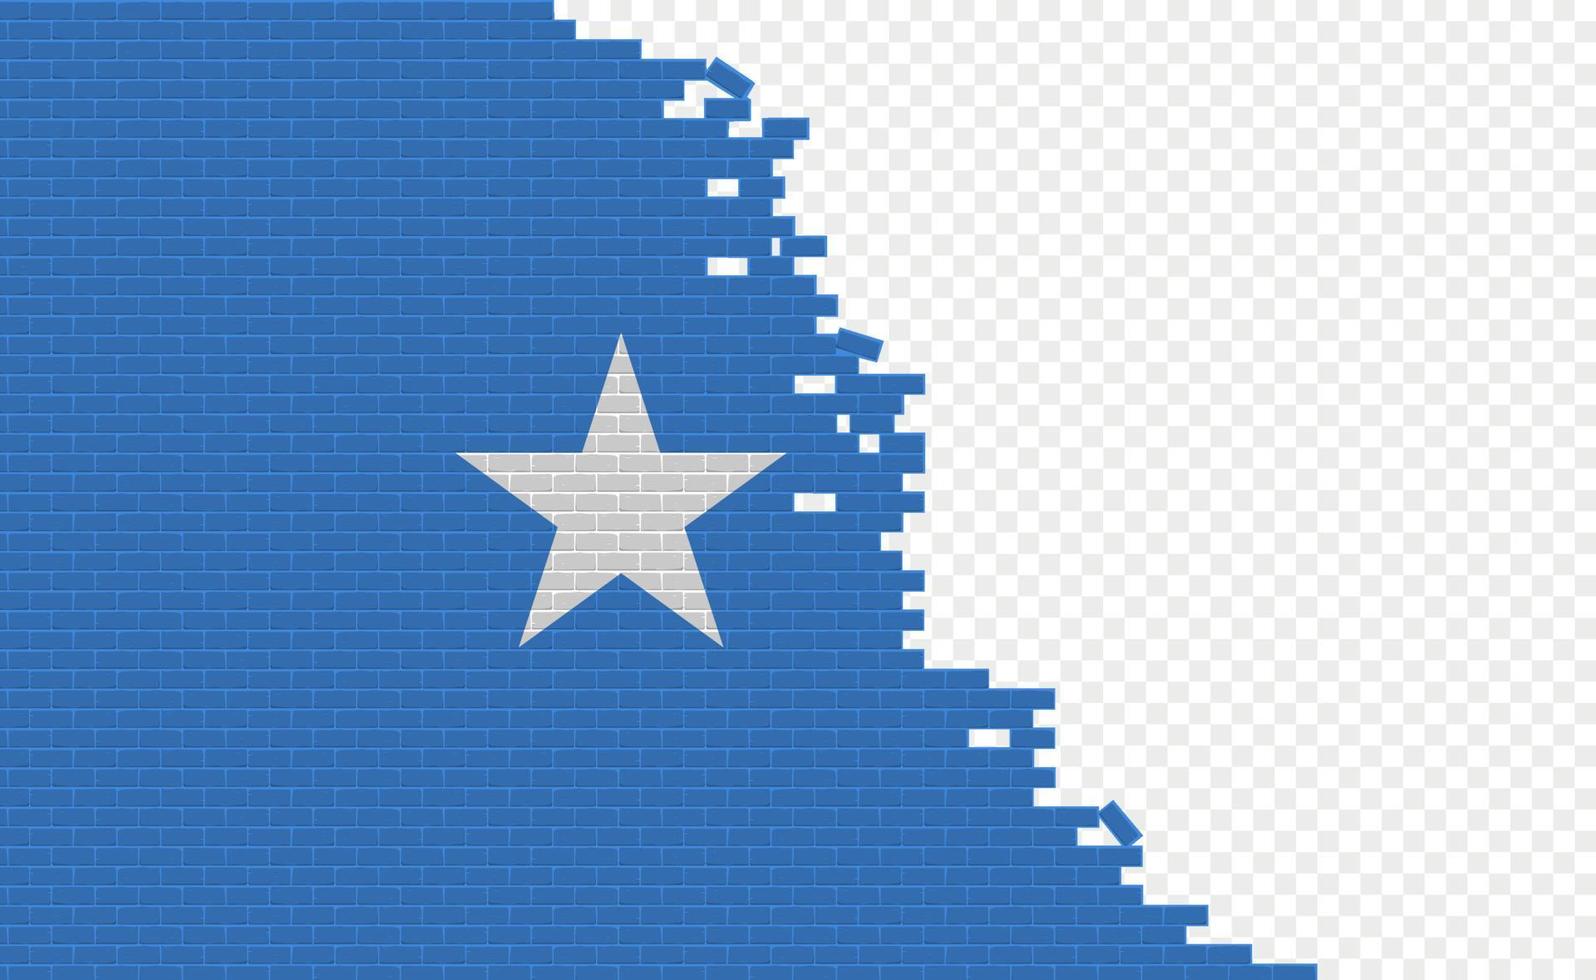 Somalia-Flagge auf gebrochener Ziegelwand. leeres Flaggenfeld eines anderen Landes. Ländervergleich. einfache Bearbeitung und Vektor in Gruppen.